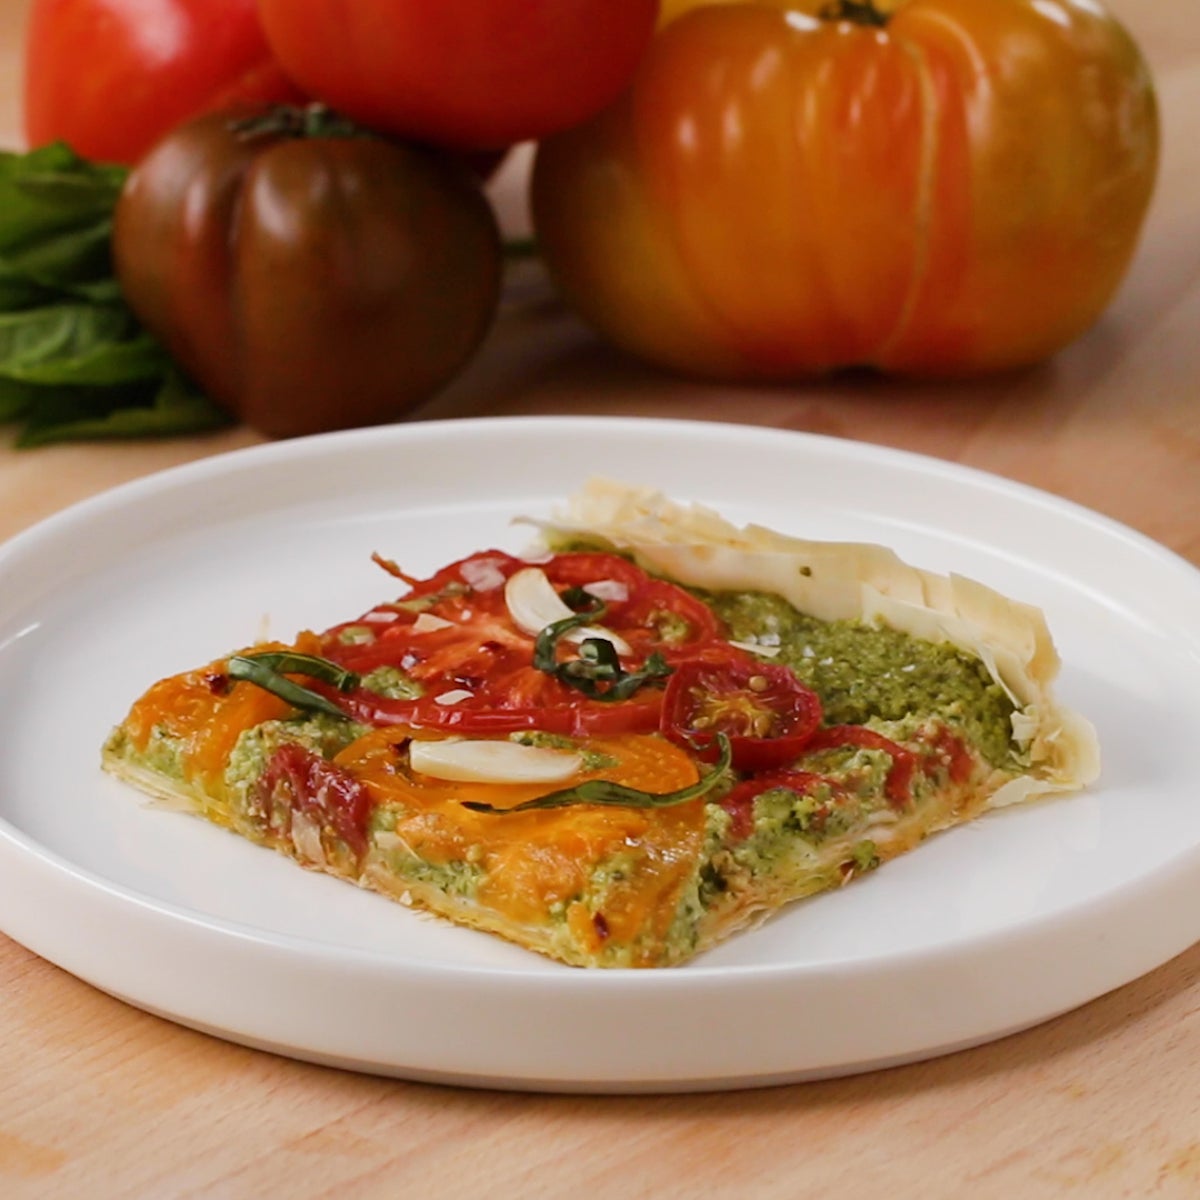 Heirloom Tomato Tart - This Savory Vegan